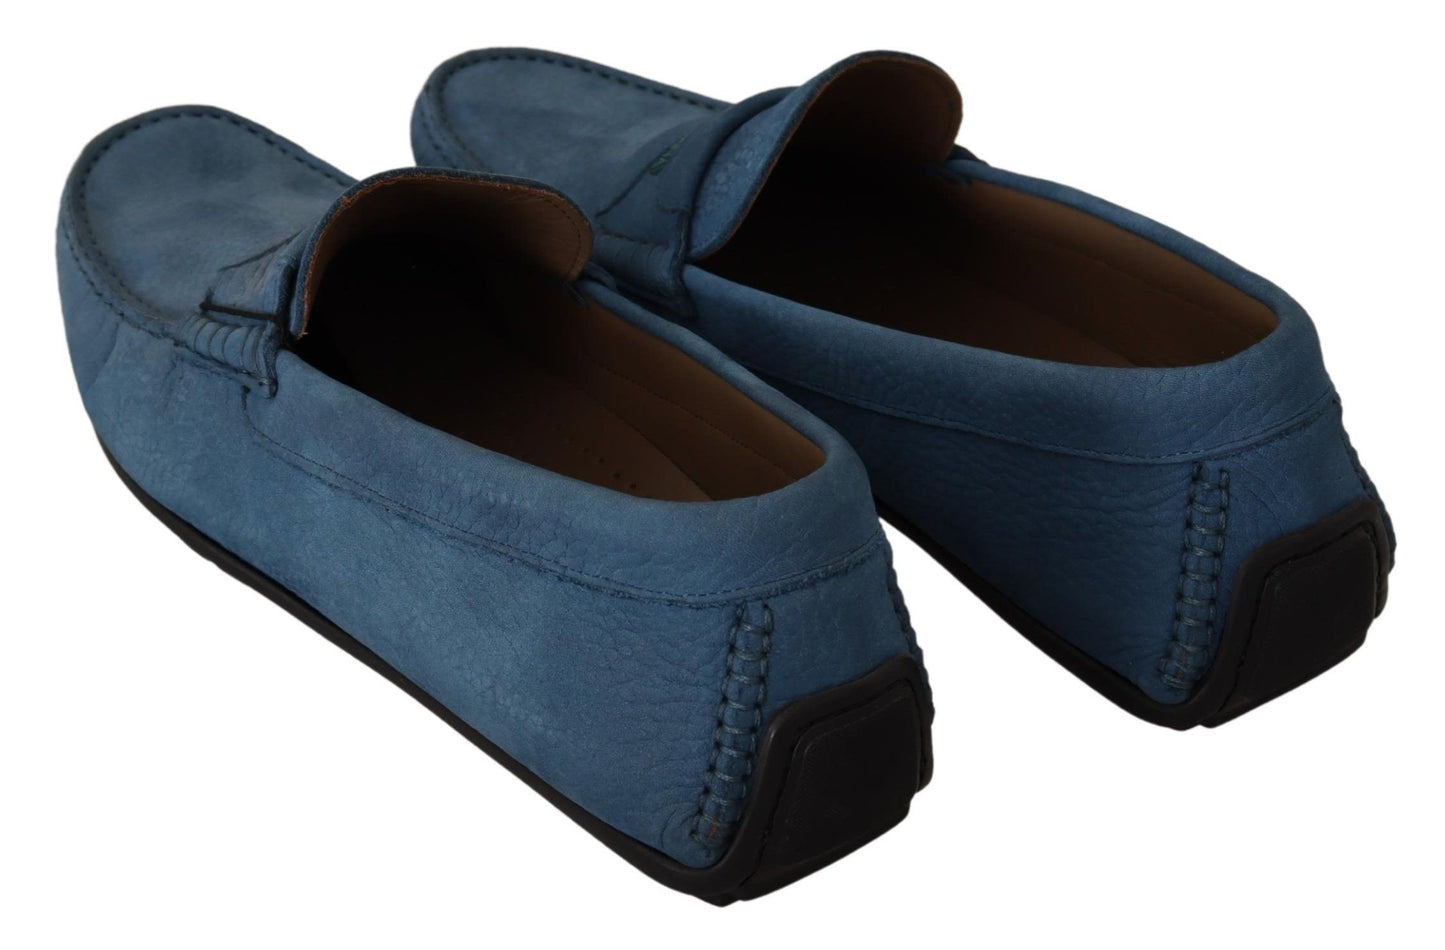 Elegant Blue Leather Loafers for Men